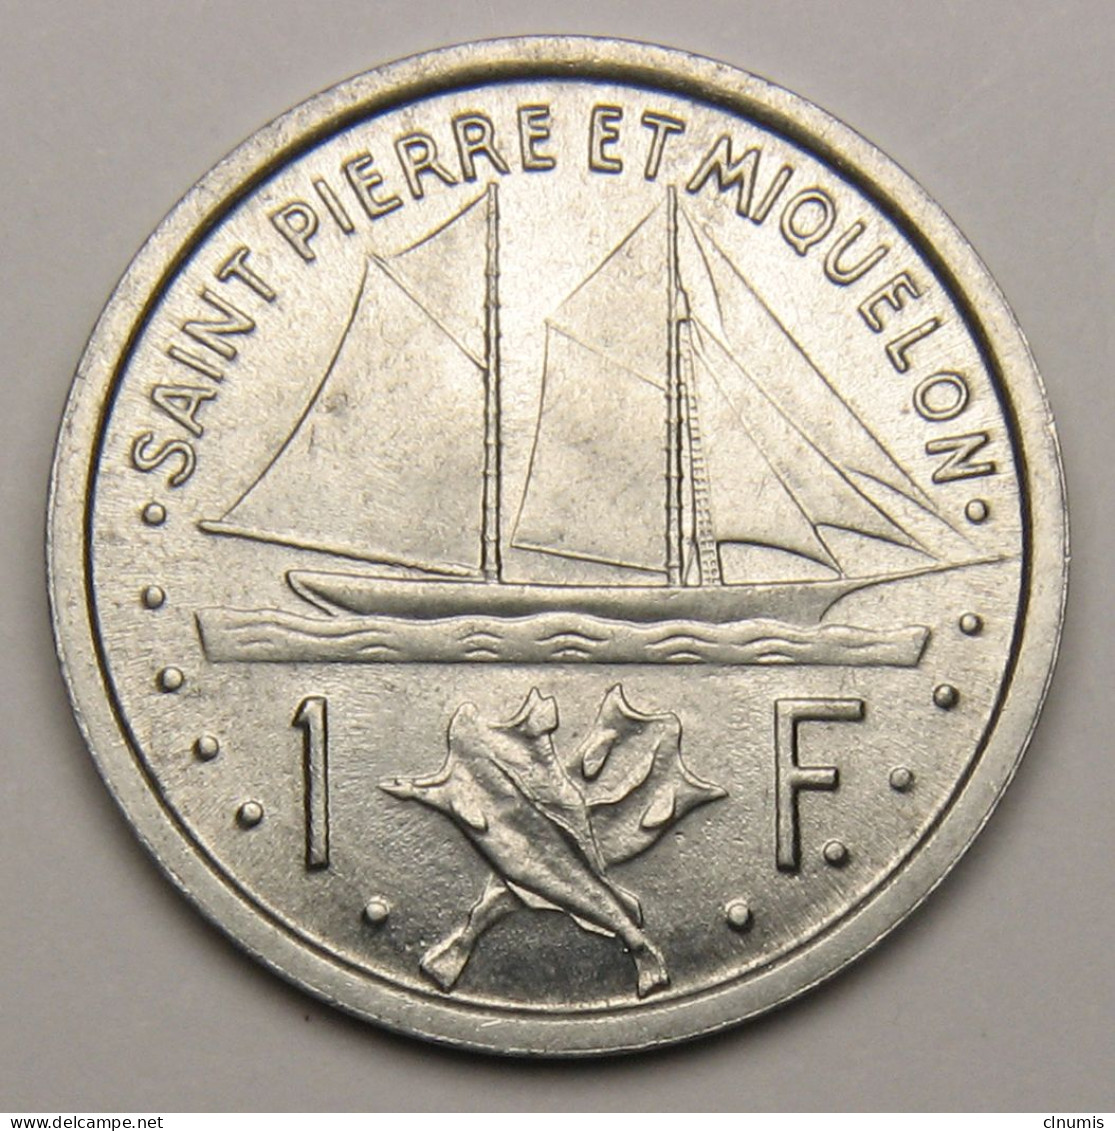 ASSEZ RARE : Saint-Pierre-et-Miquelon, 1 Franc Union Française, 1948 - Saint Pierre And Miquelon